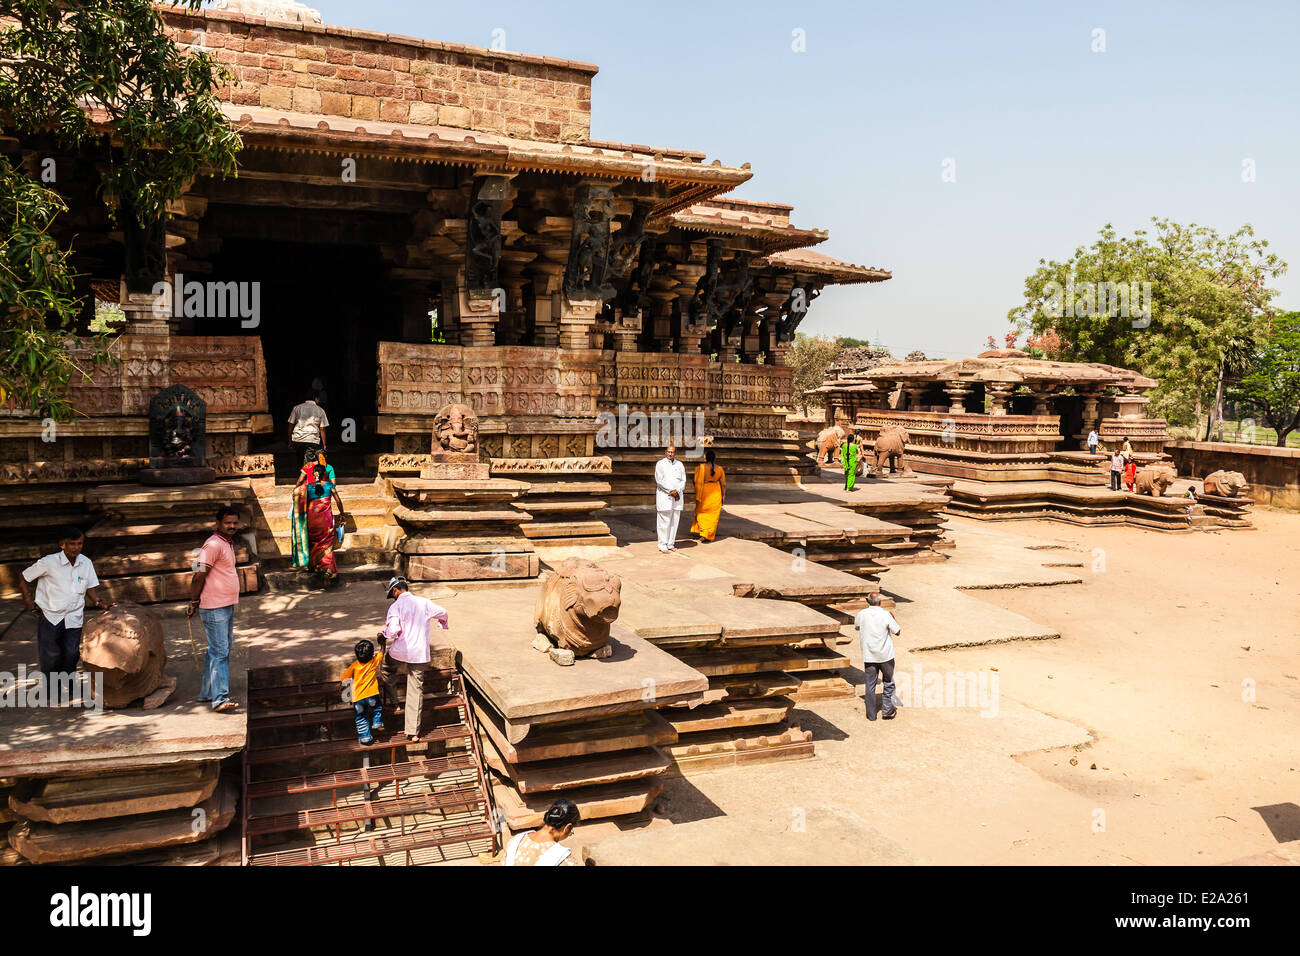 India, Andhra Pradesh state, Palampet, Ramappa temple Stock Photo